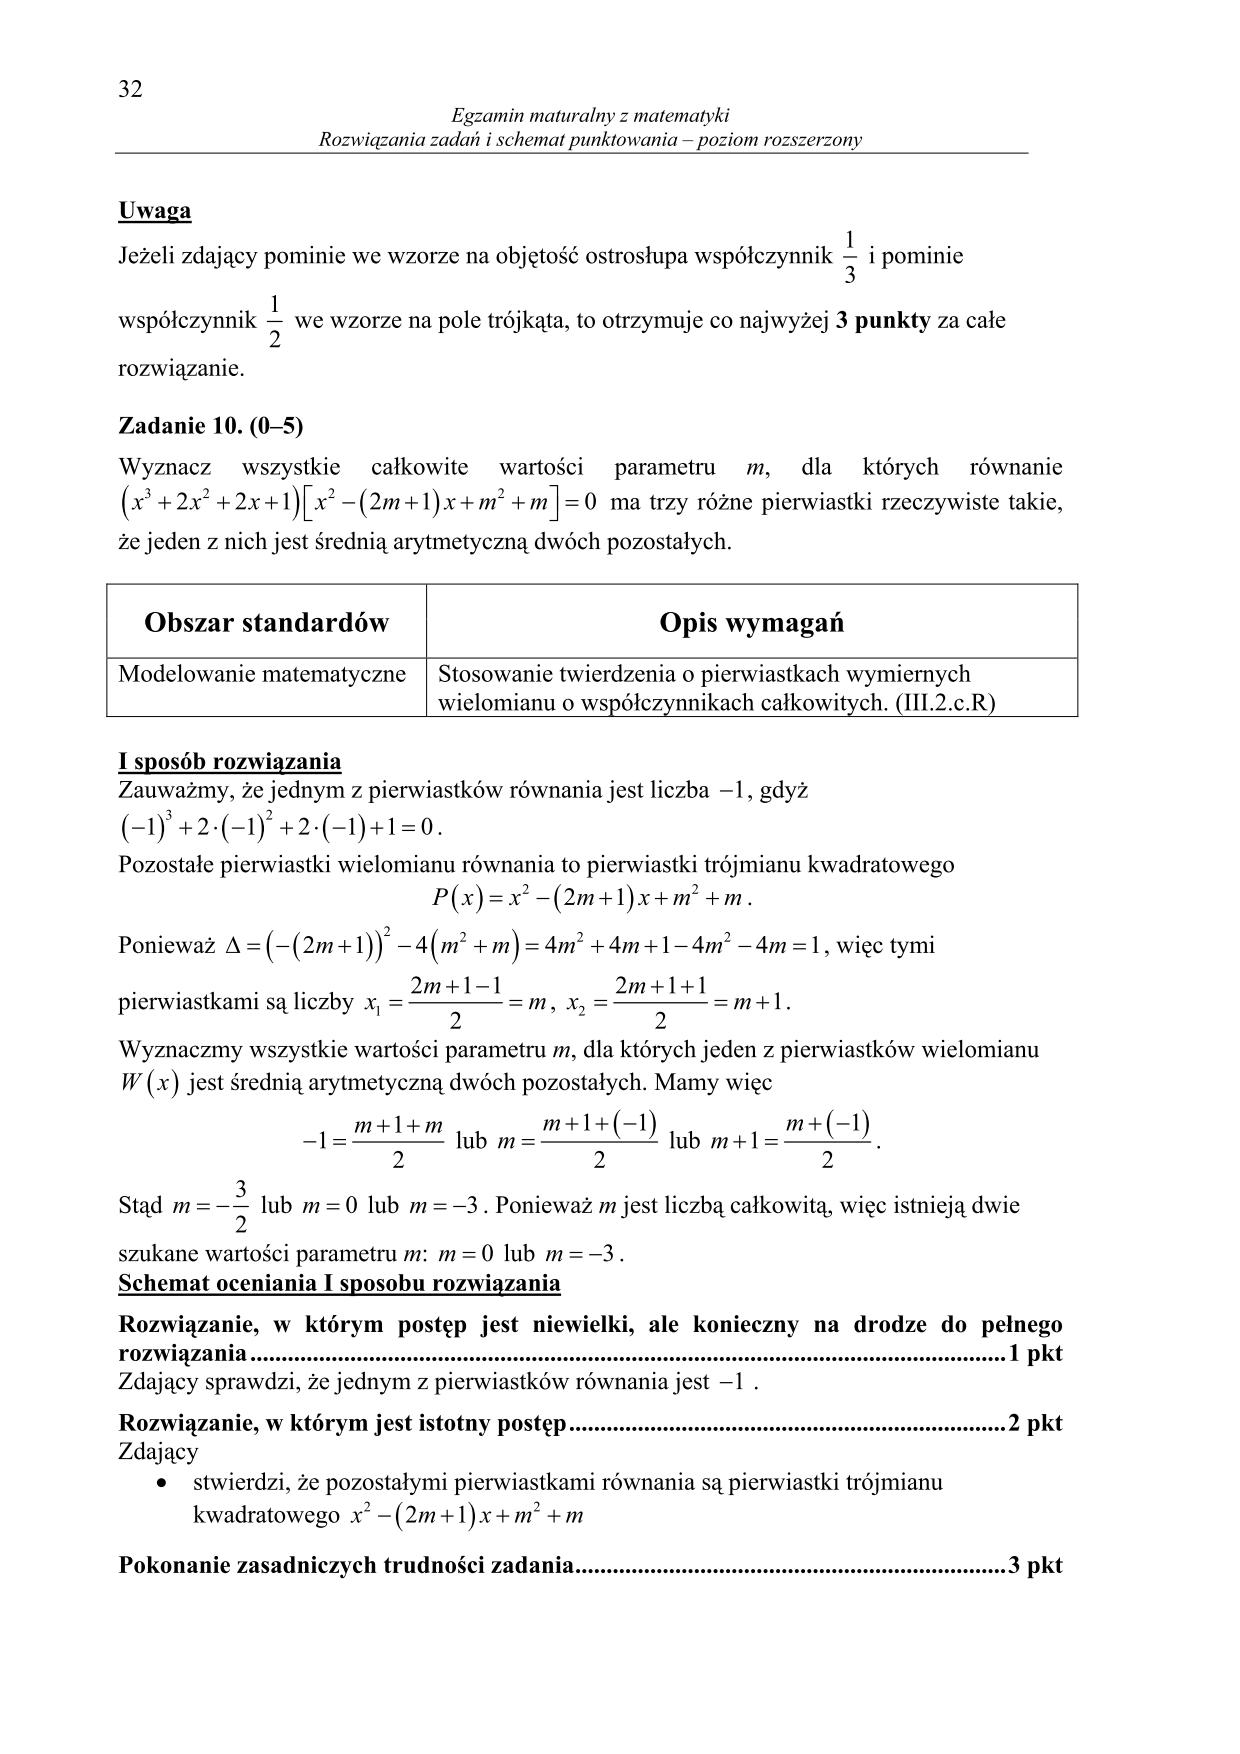 odpowiedzi-matematyka-poziom-rozszerzony-matura-2014-32